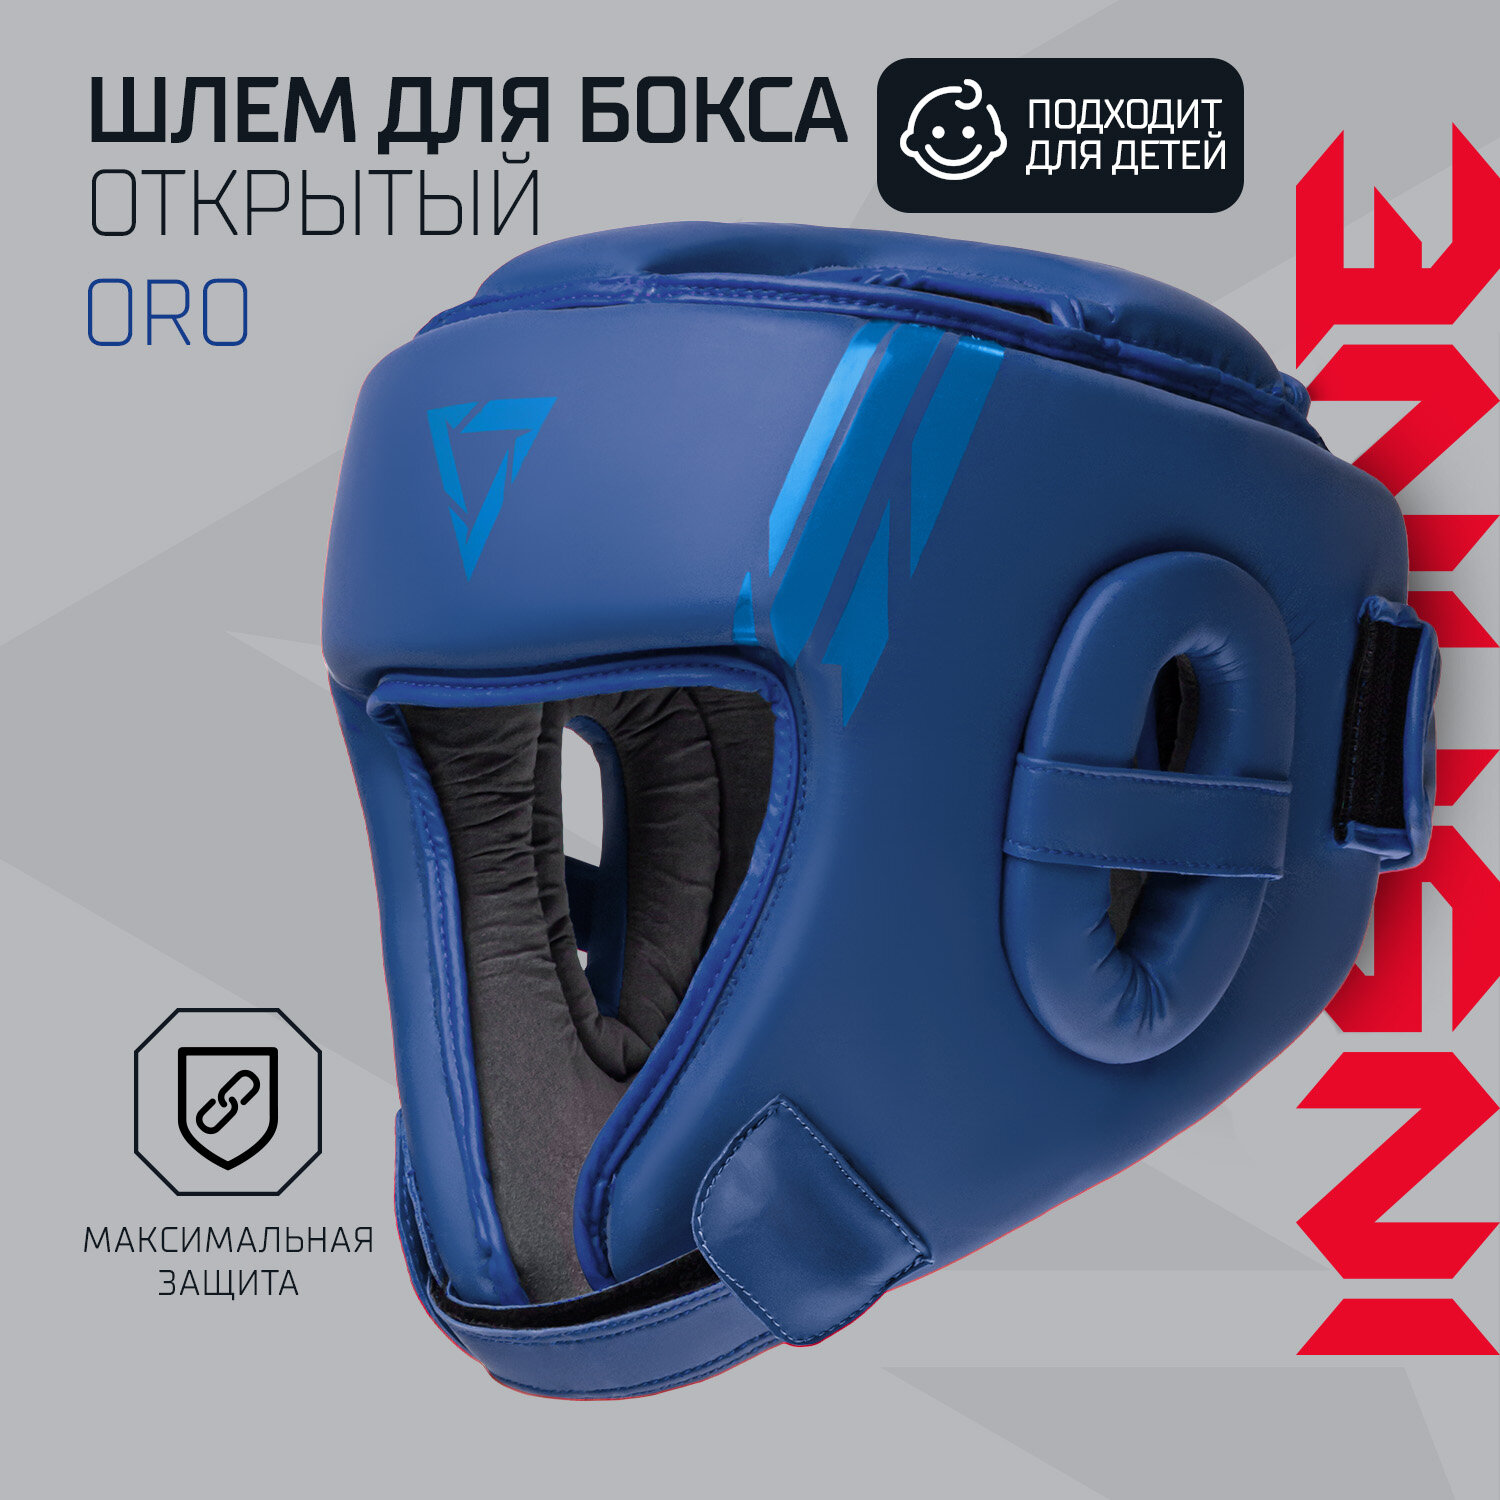 Шлем открытый INSANE ORO IN23-HG300, ПУ, синий, размер L